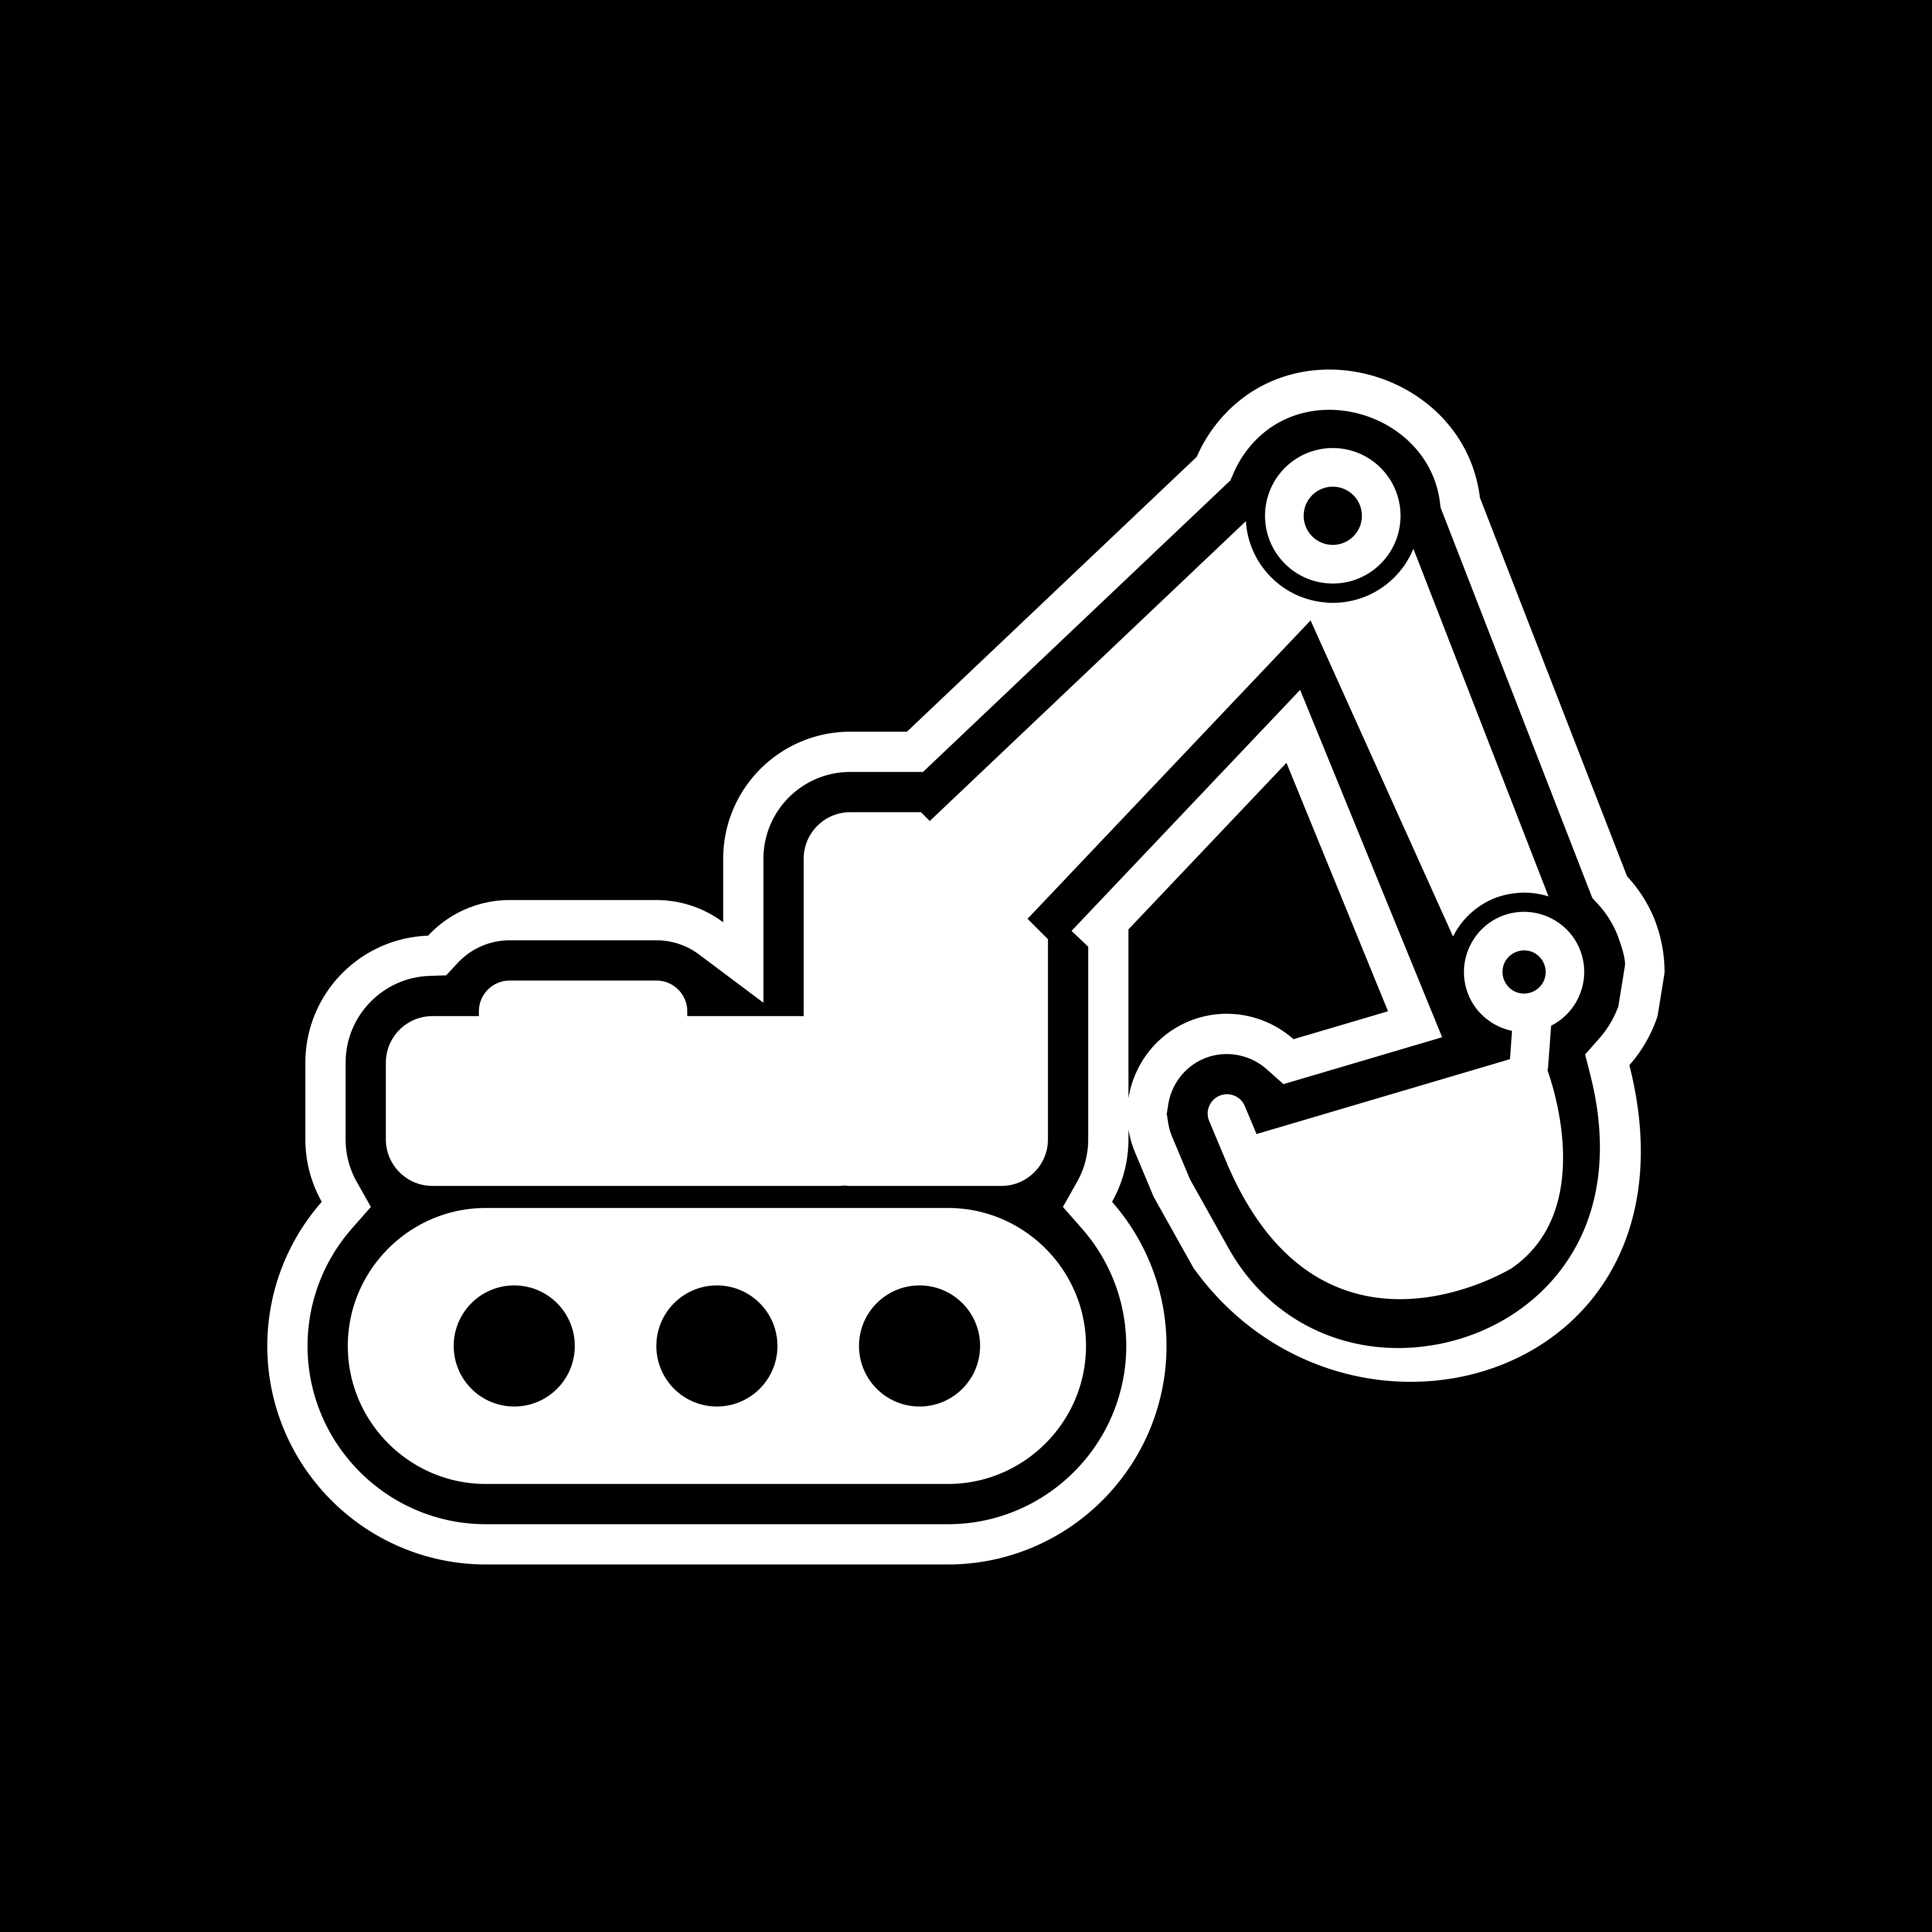 Download Excavator Icon Design - Download Free Vectors, Clipart Graphics & Vector Art